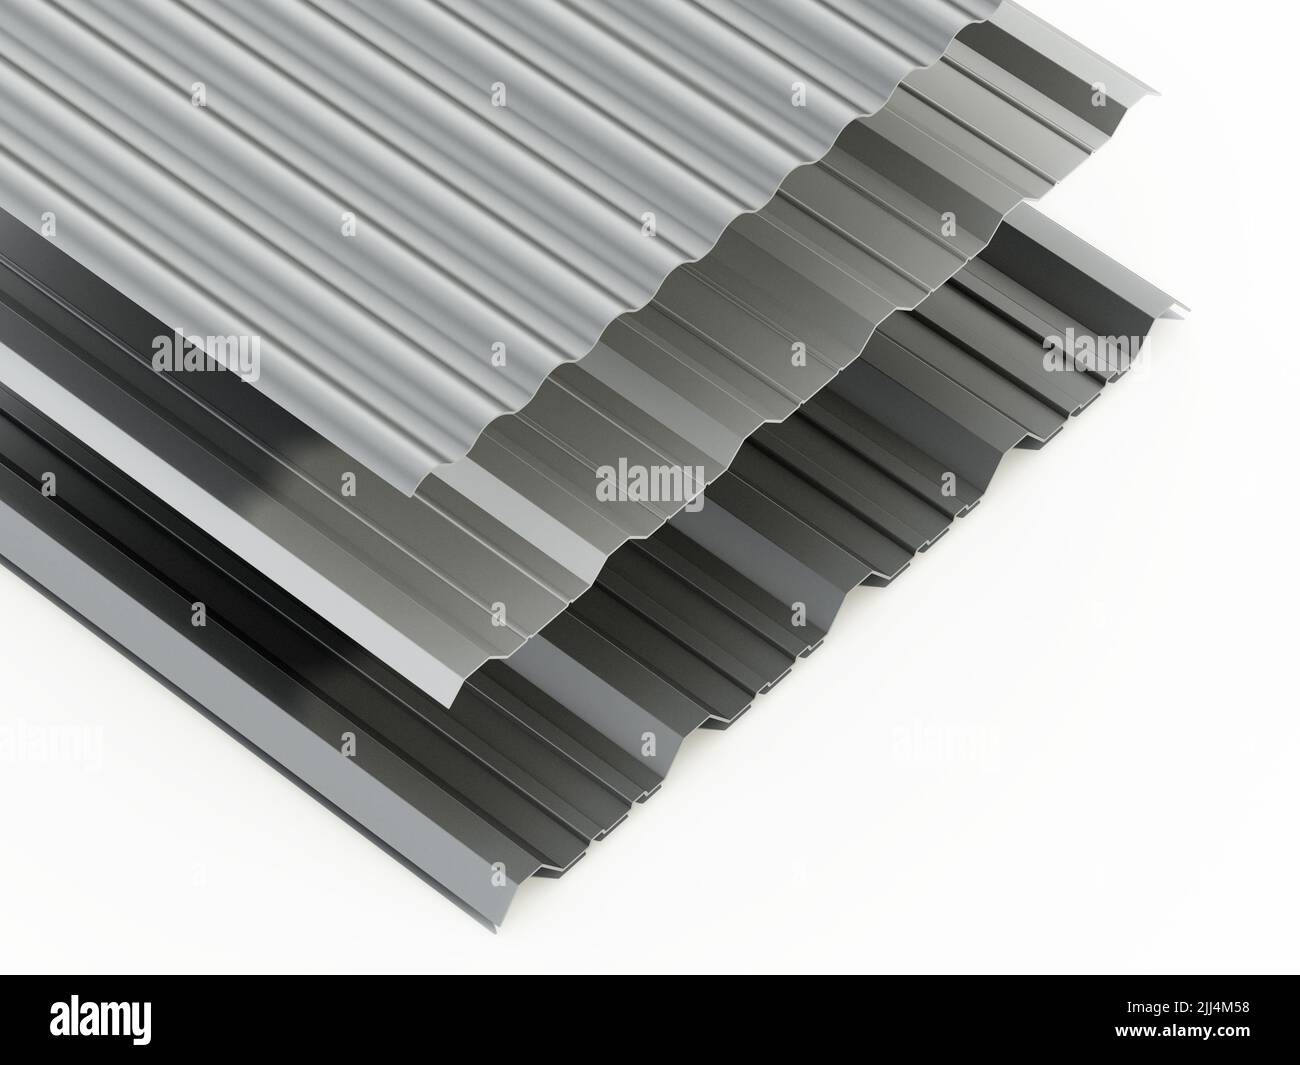 Láminas de metal corrugado aisladas sobre fondo blanco. Ilustración 3D. Foto de stock